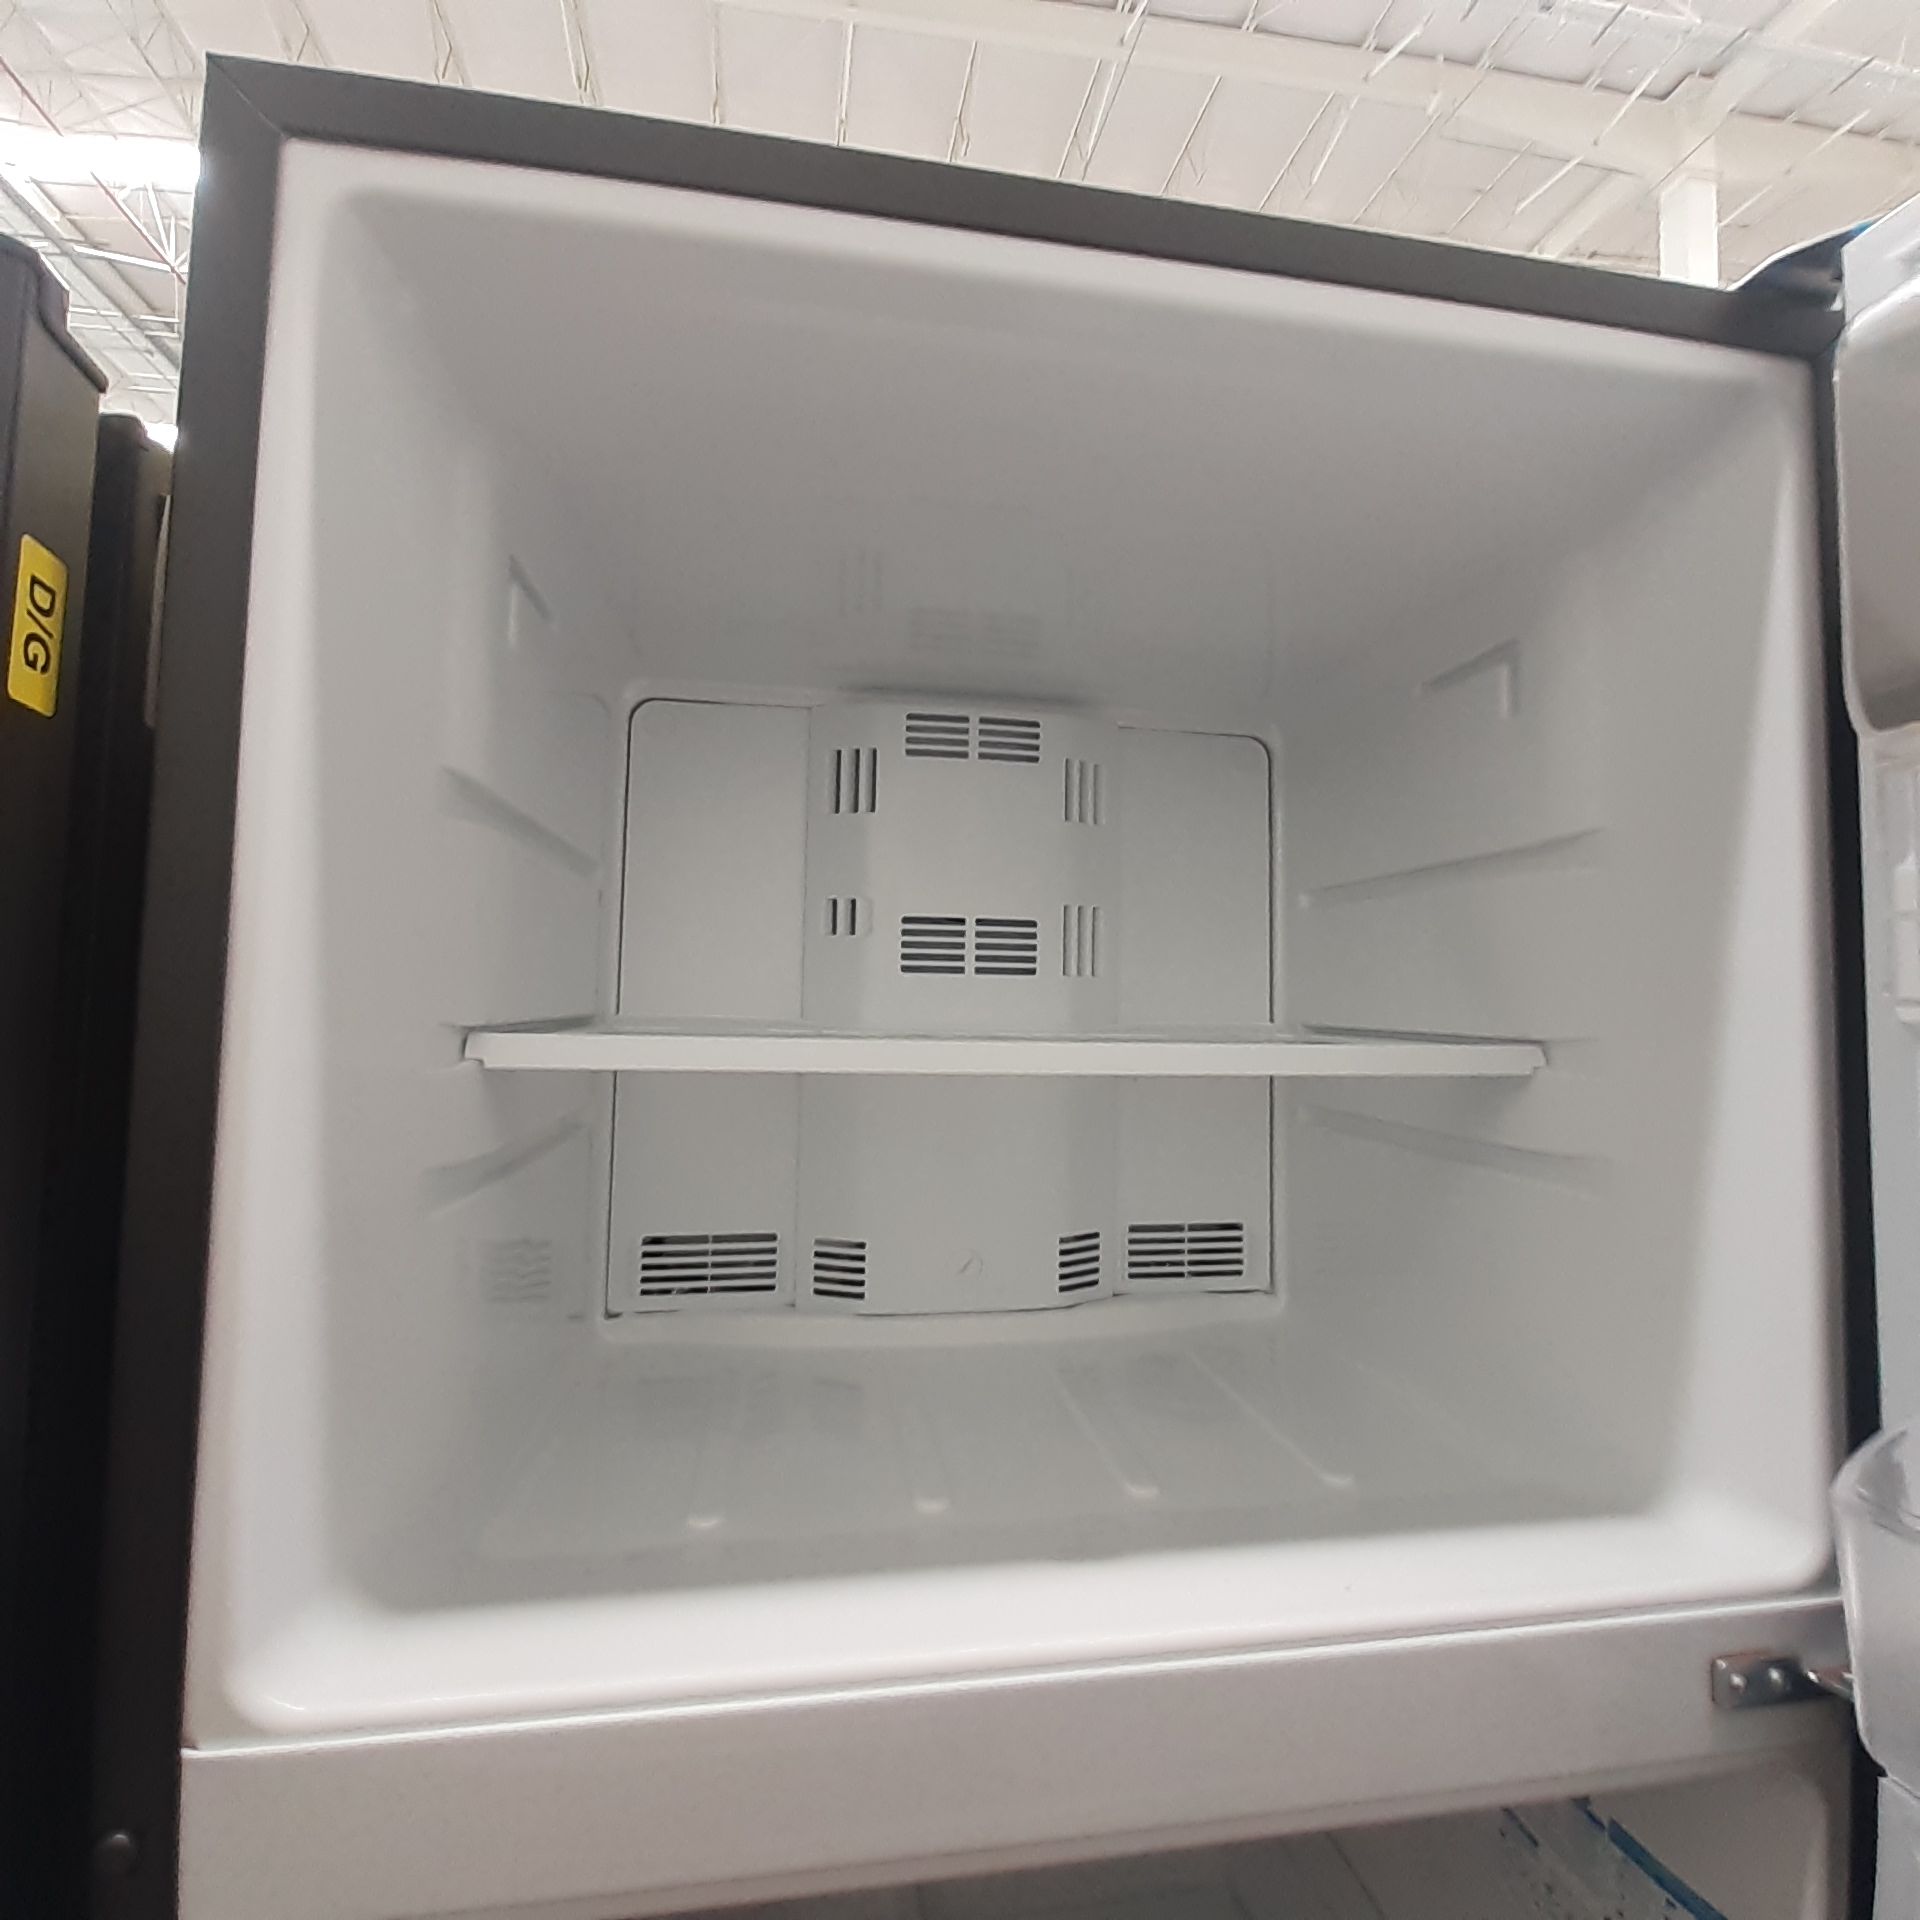 Lote De 2 Refrigeradores: 1 Refrigerador Marca Whirlpool, 1 Refrigerador Marca Mabe, Distintos Model - Image 12 of 22